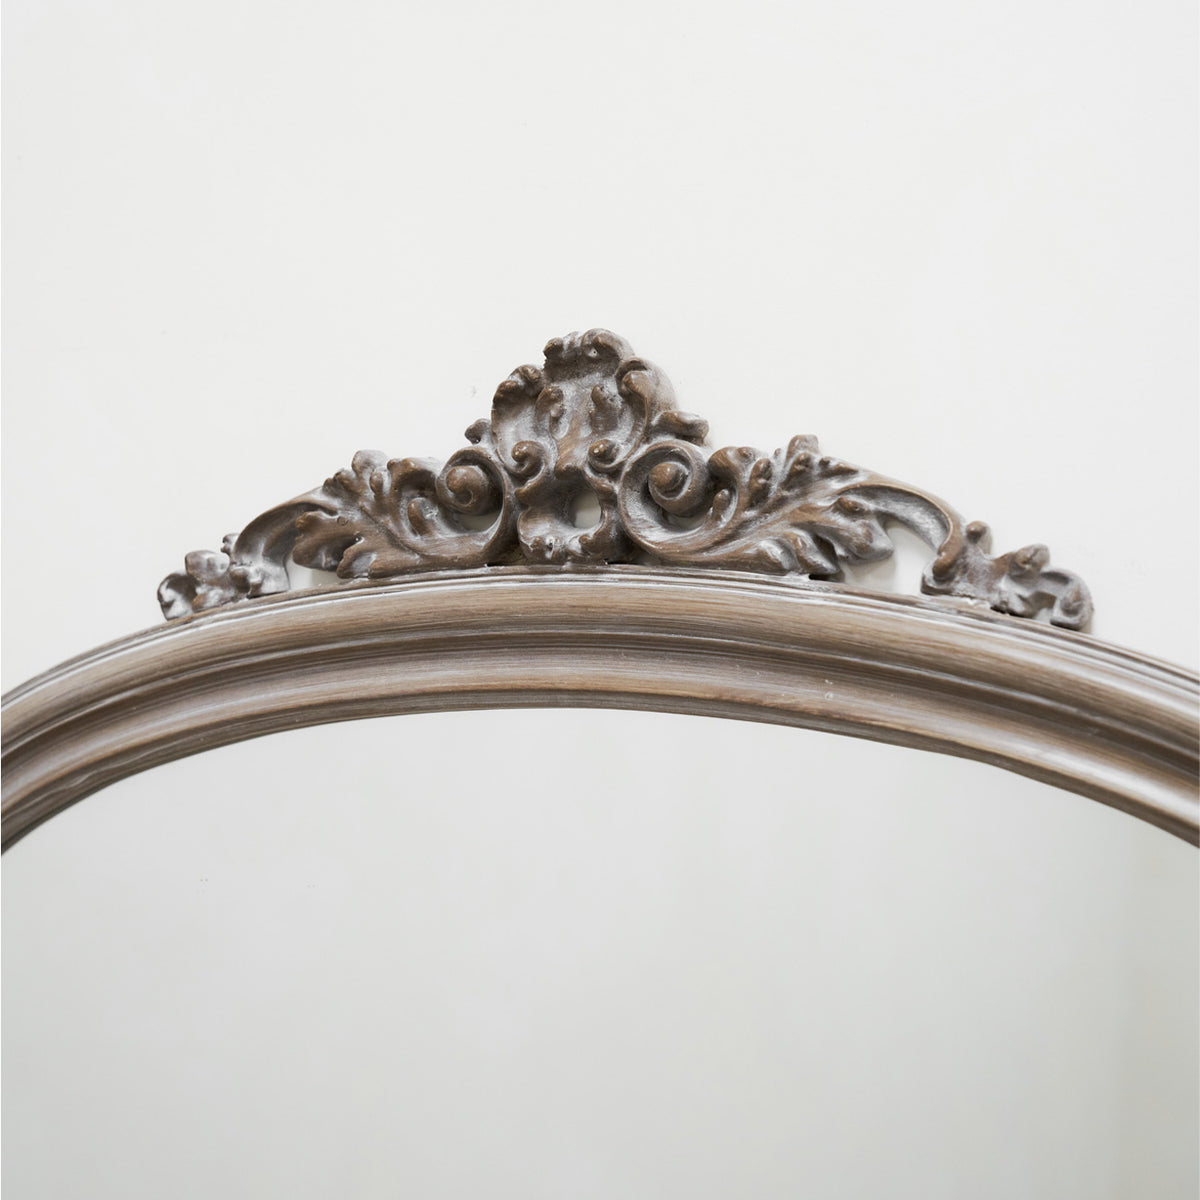 Mantle - Grand miroir en bois lavé orné 104cm x 96cm